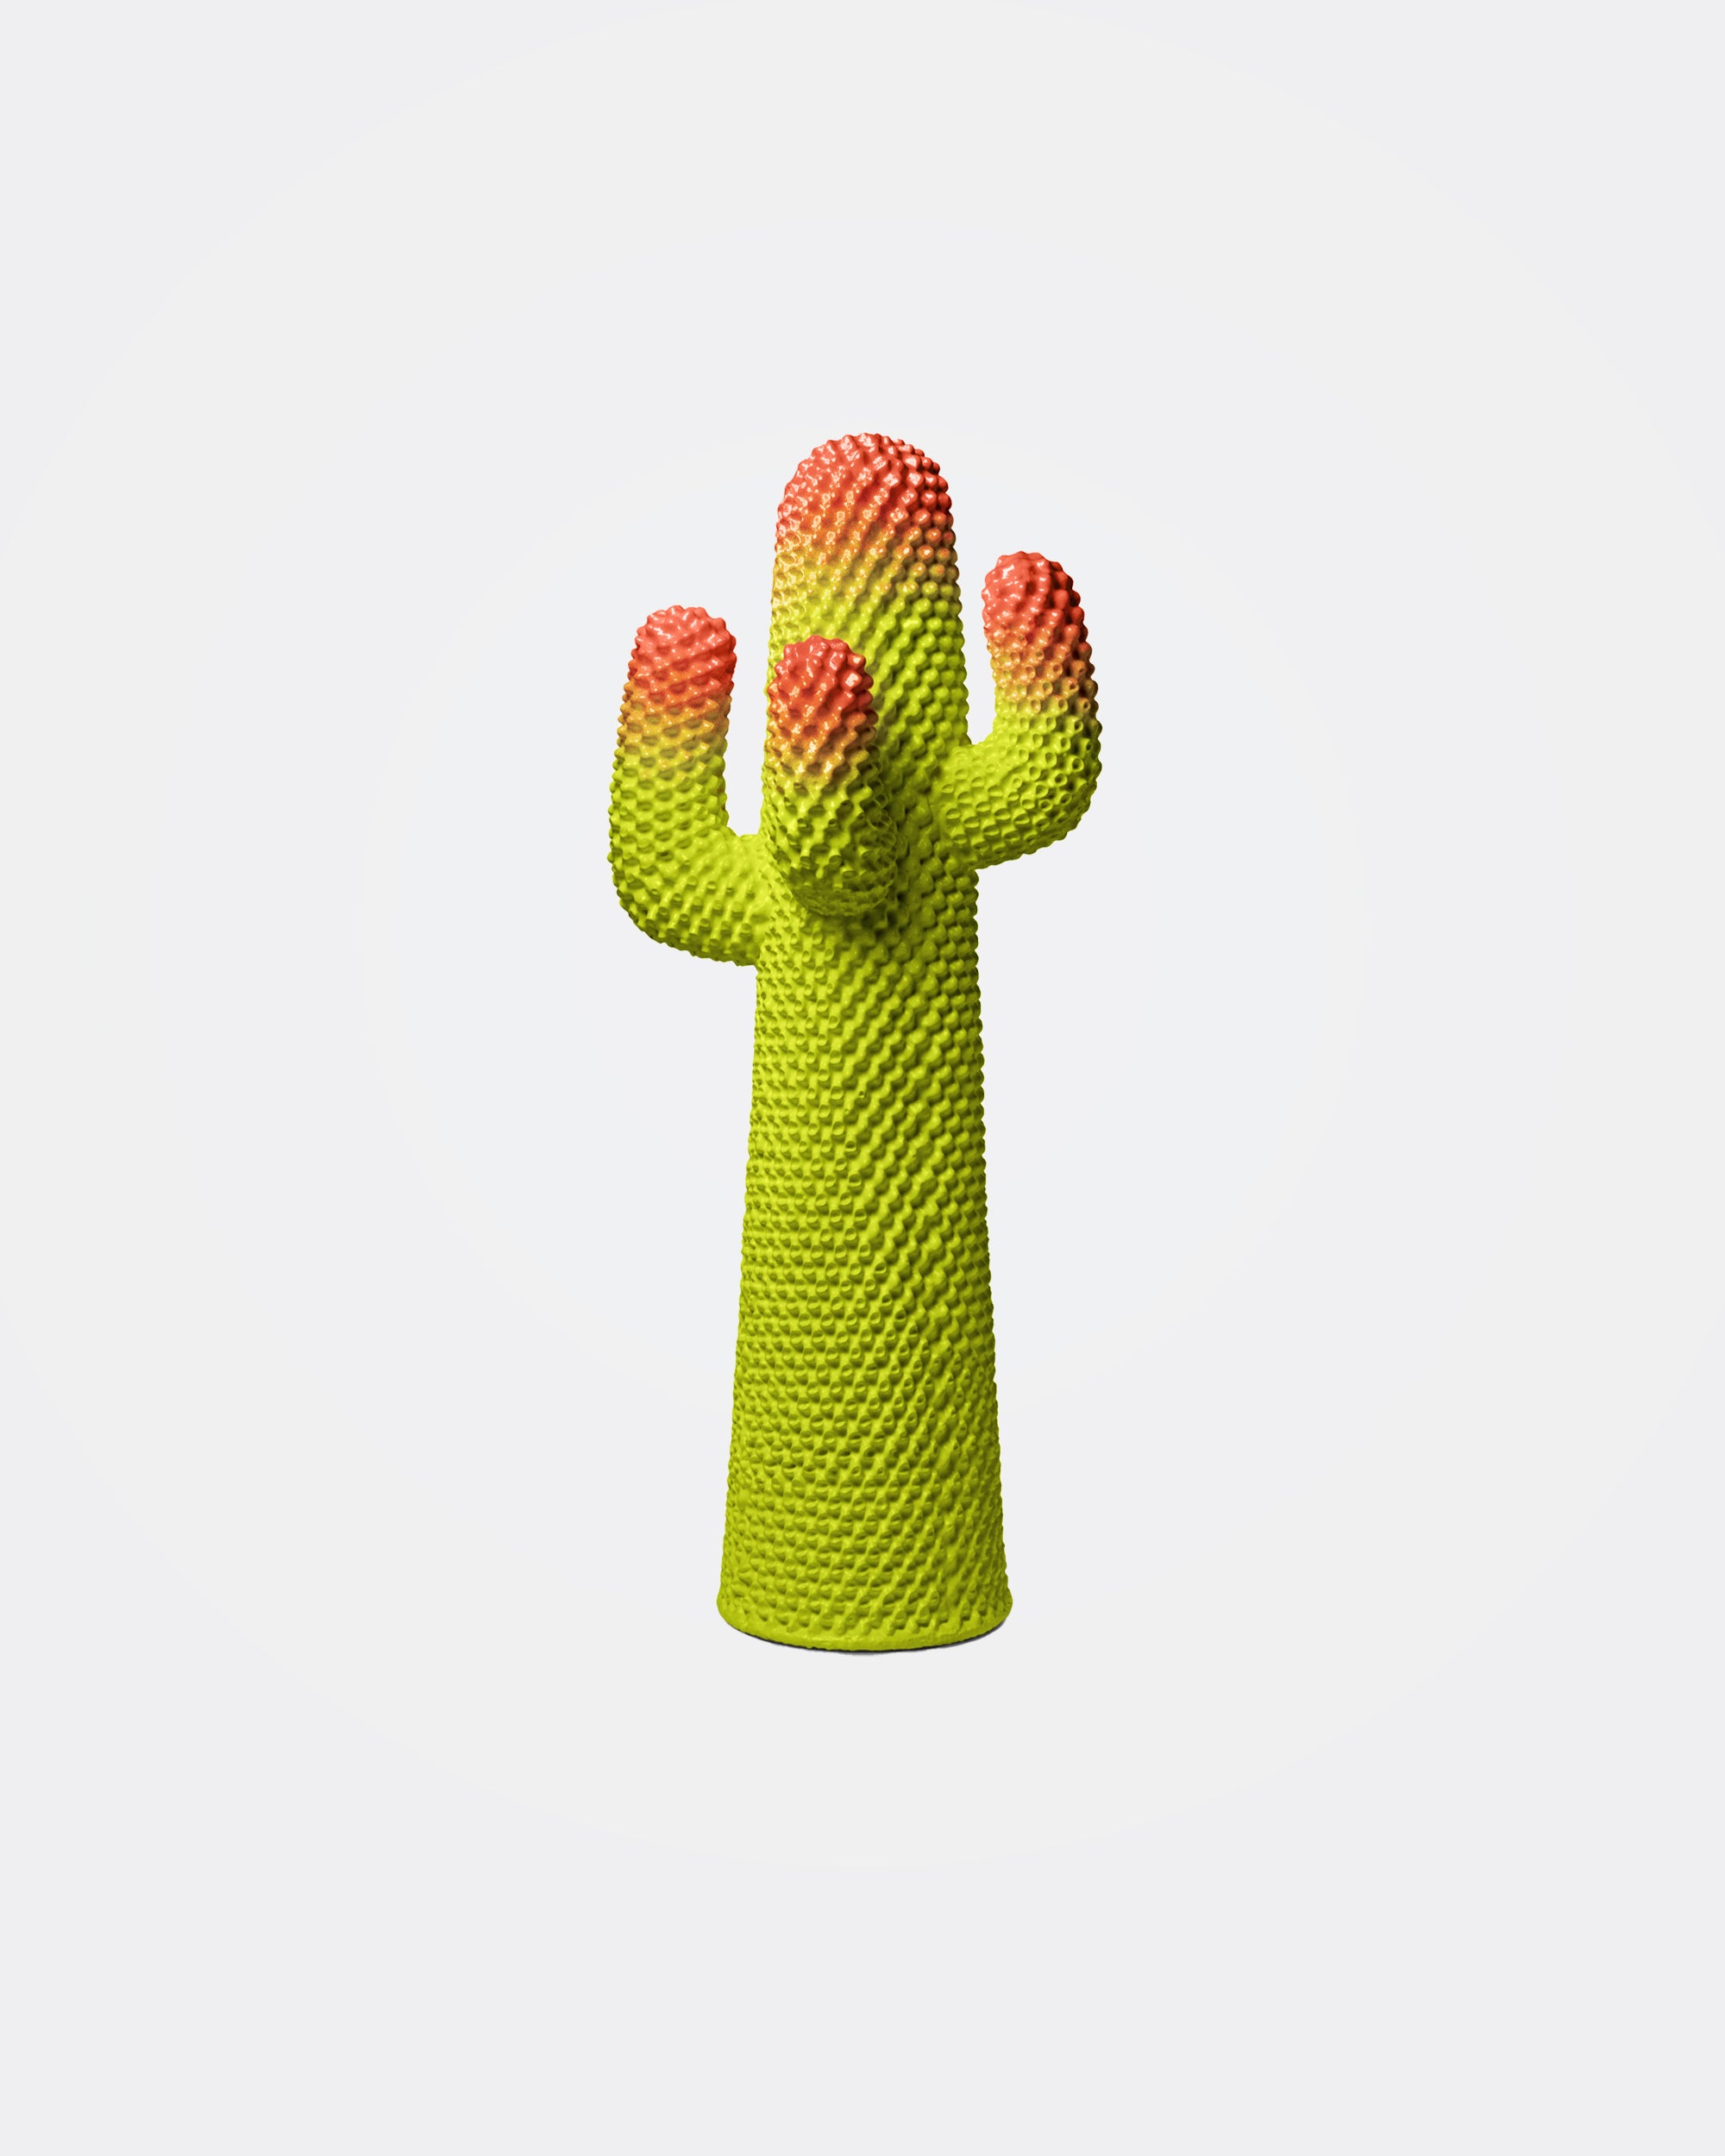 Meta Cactus 1/300